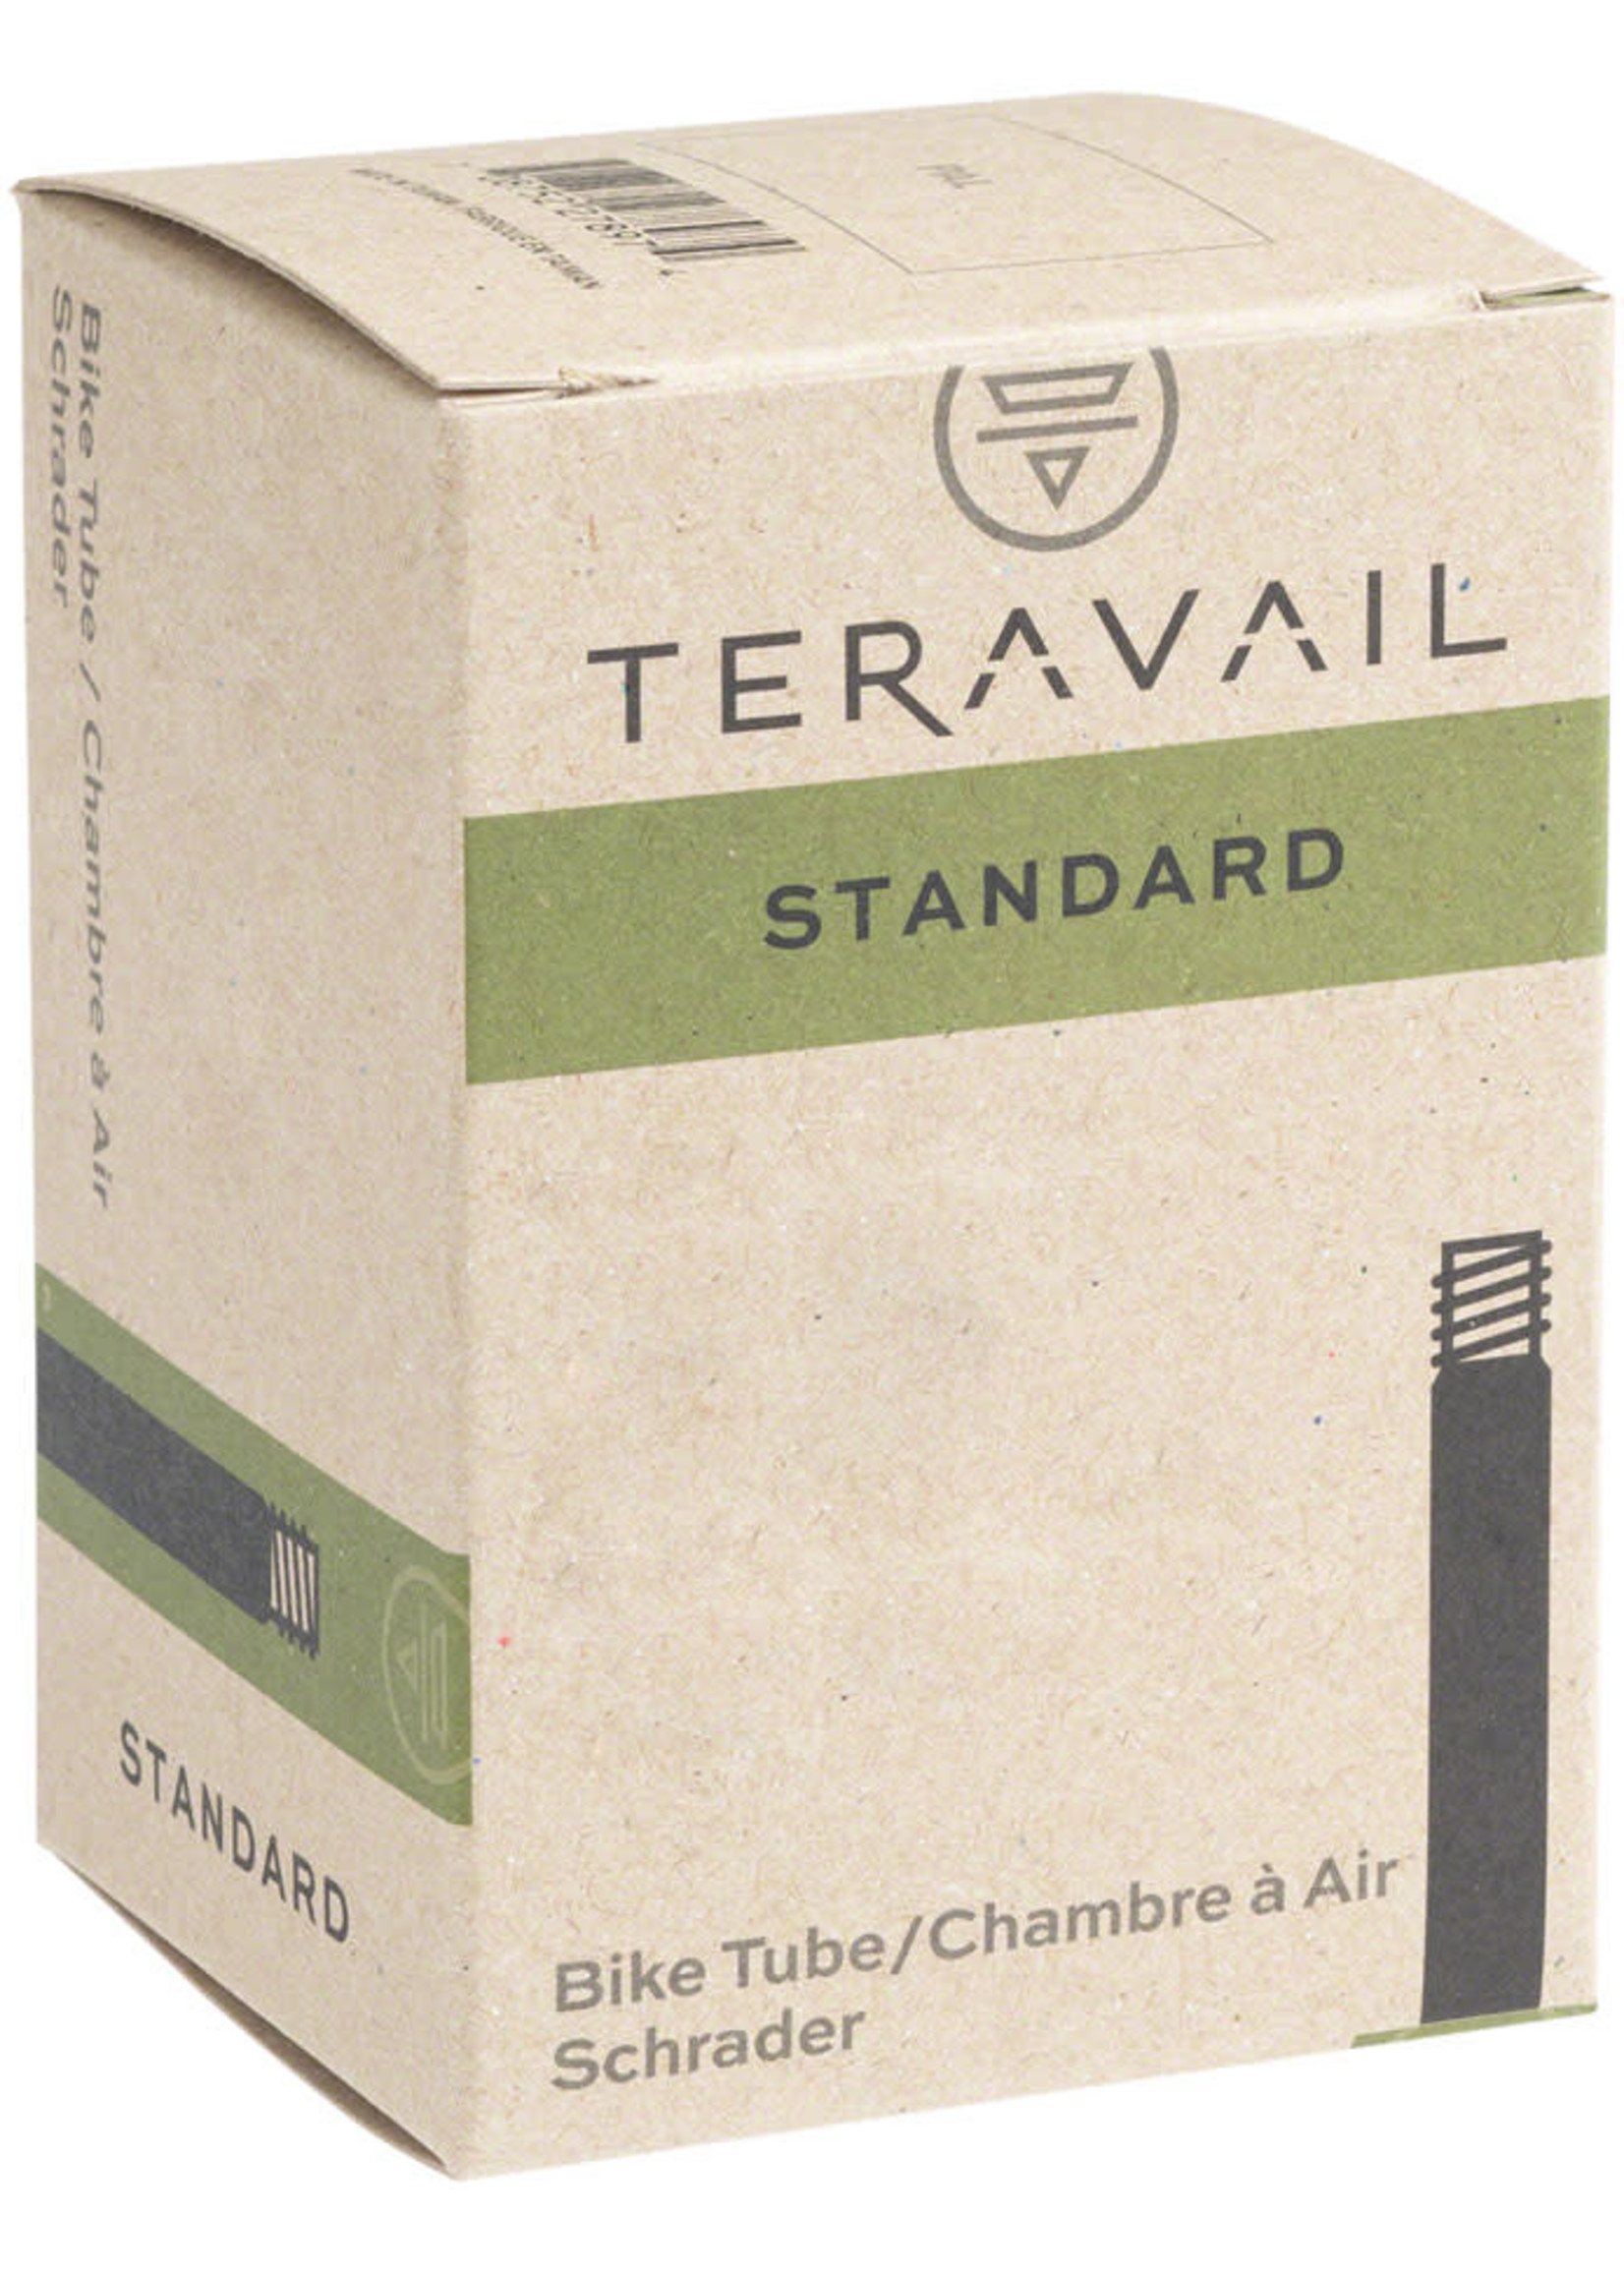 Teravail Standard Schrader Tube - 26x3.50-4.50, 35mm